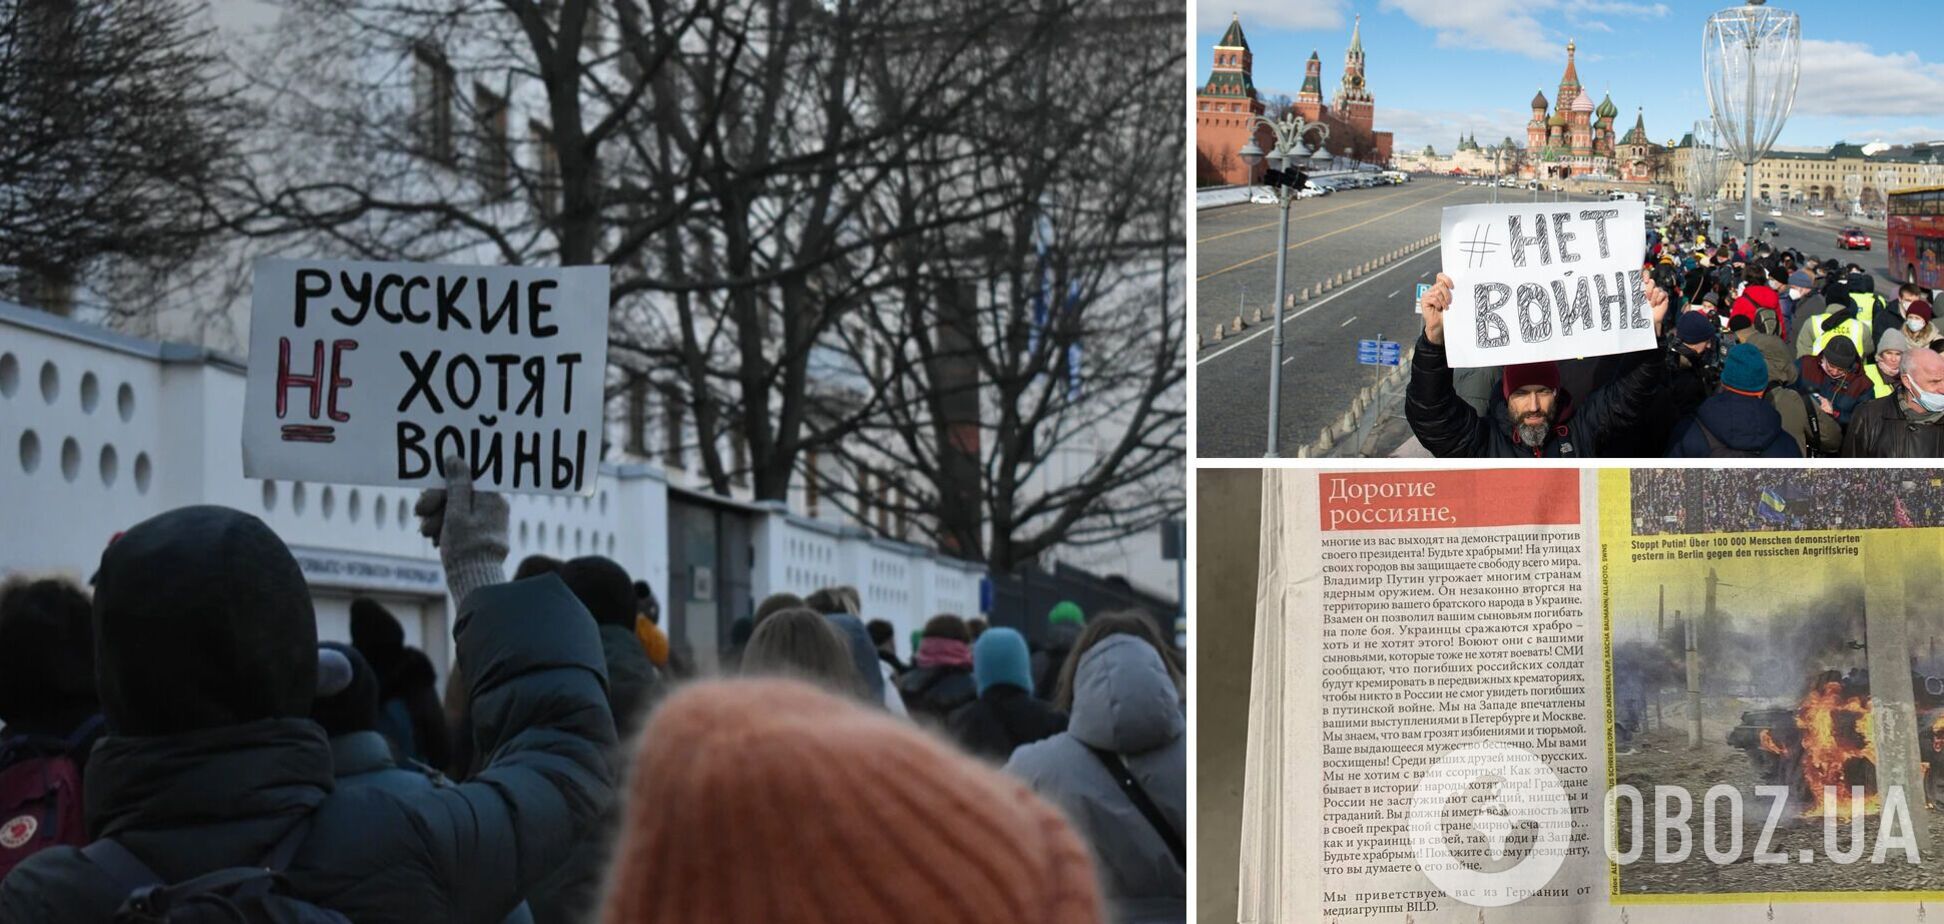 'Будьте храбрыми, покажите Путину, что думаете о его войне': немецкая Bild вышла с обращением к россиянам. Фото